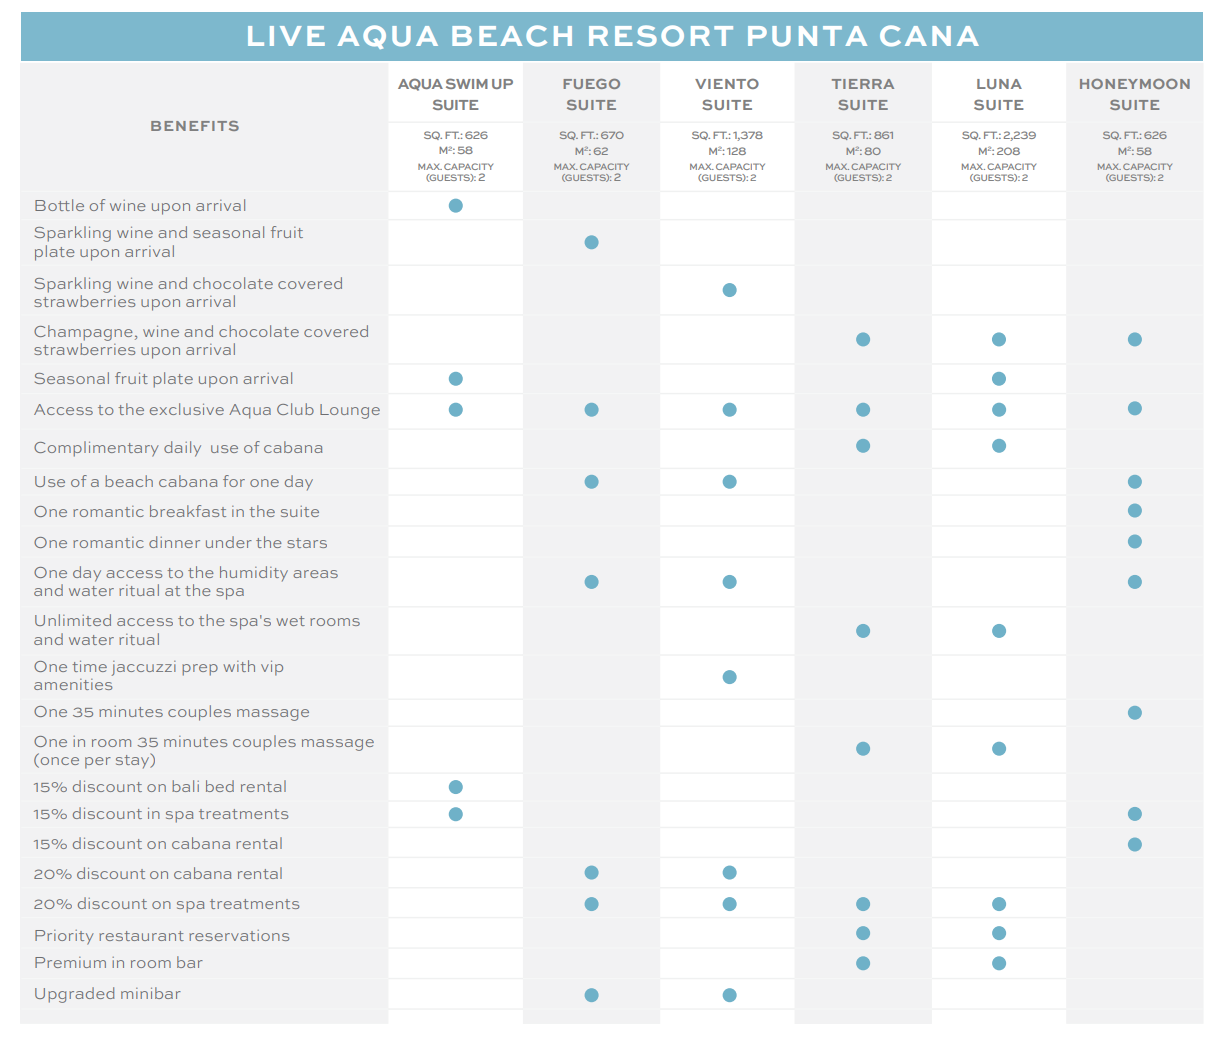 Benefits and discounts sheet of Live Aqua Punta Cana